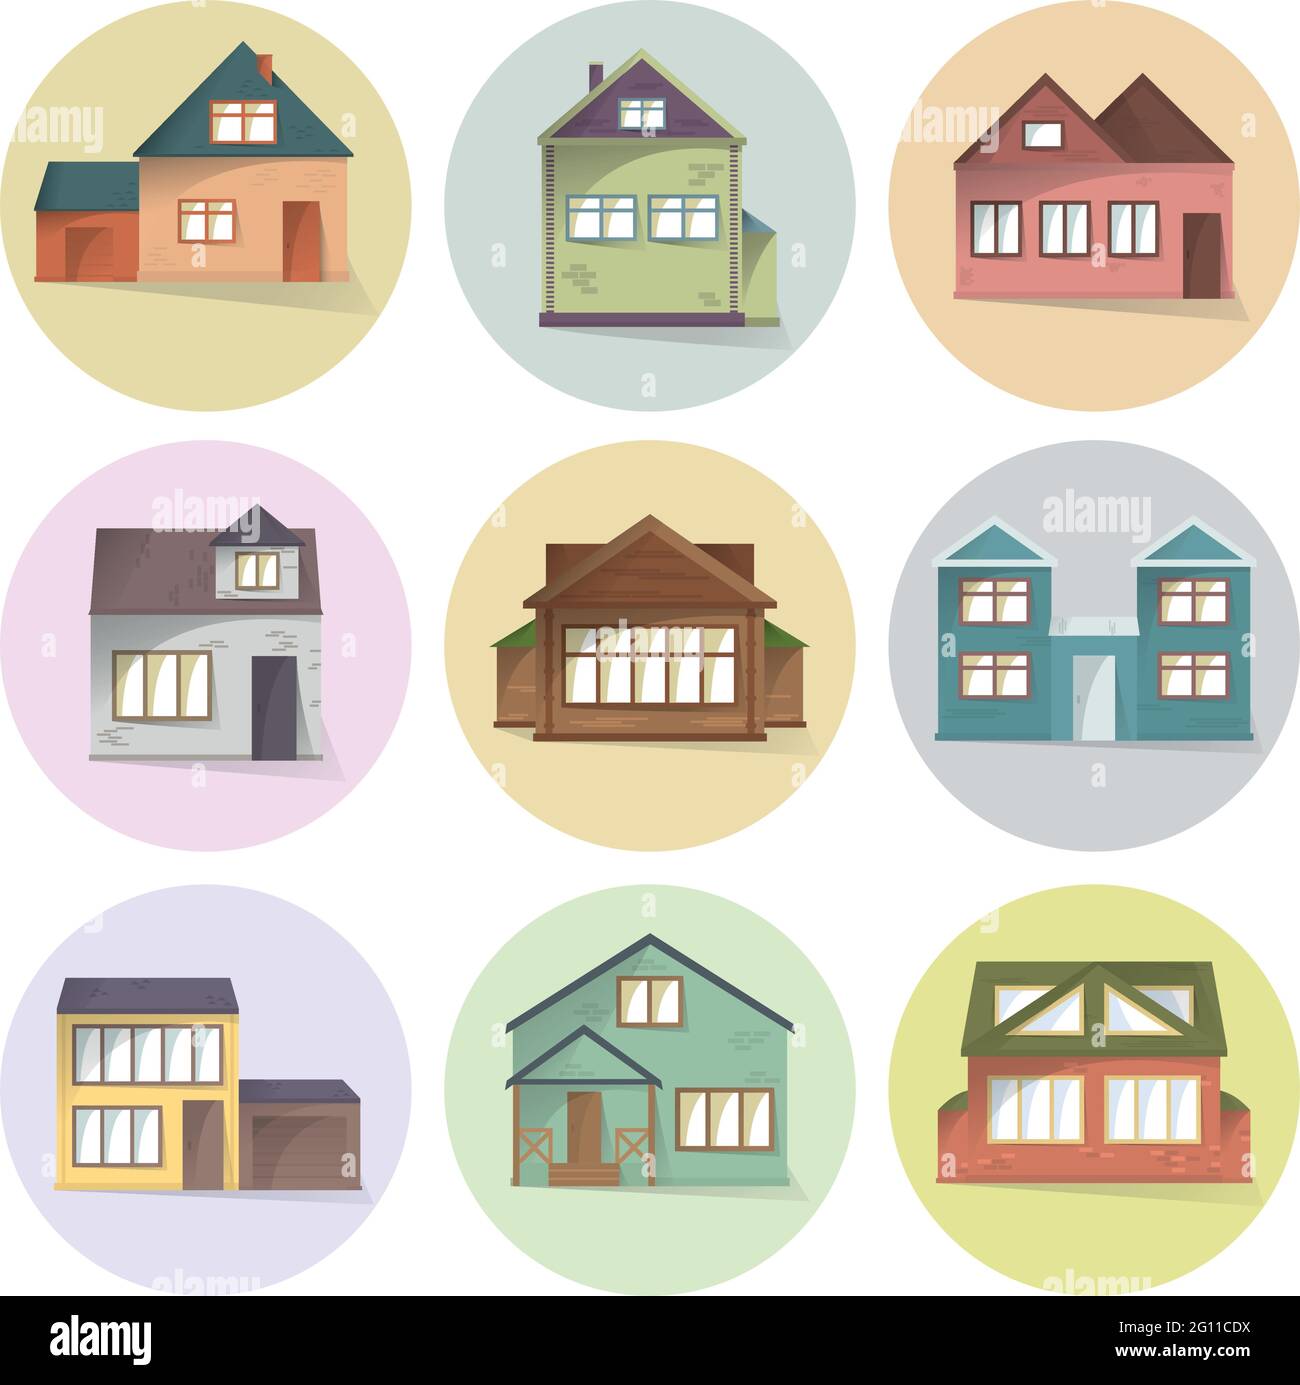 Haus-Ikonen-Set, verschiedene Arten von Häusern, Gebäudefassaden, halbflach Stil mit Schatten, Vektor-Illustration Stock Vektor